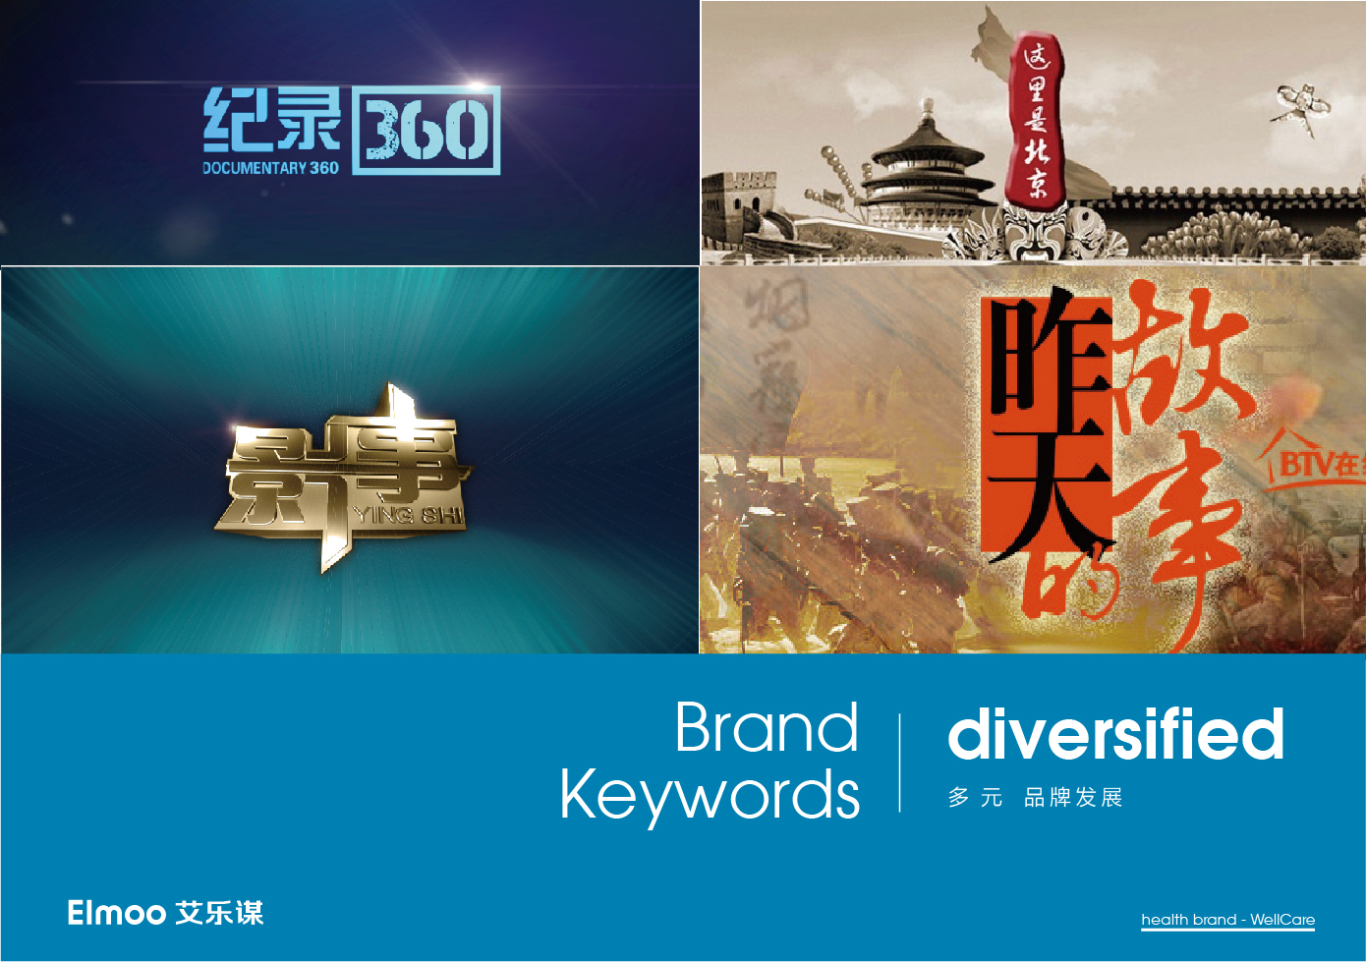 BTV北京纪实频道品牌形象设计图3